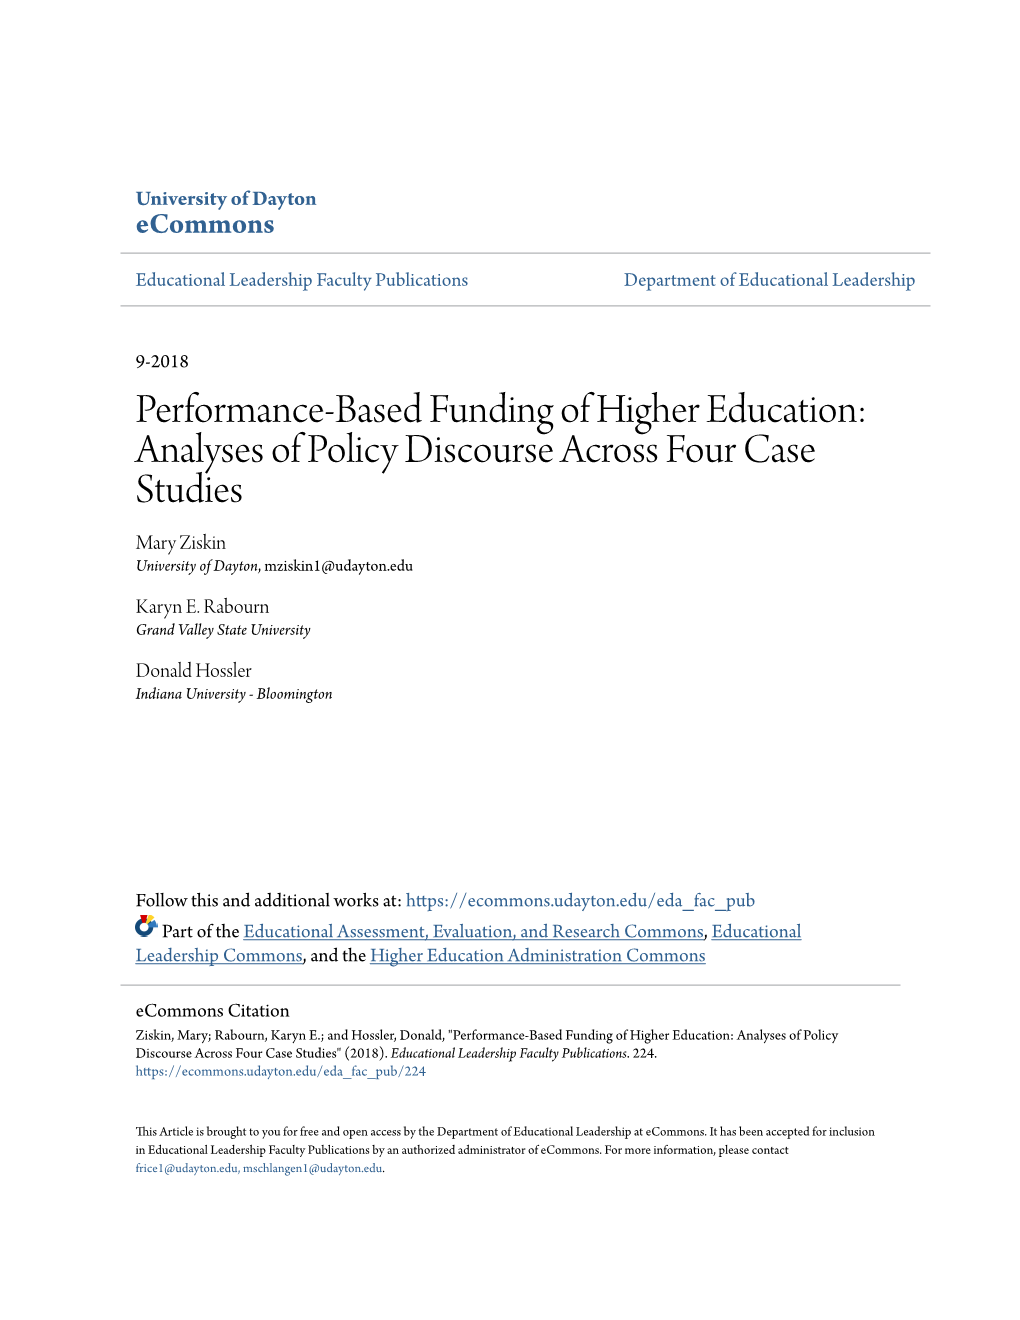 Performance-Based Funding of Higher Education: Analyses of Policy Discourse Across Four Case Studies Mary Ziskin University of Dayton, Mziskin1@Udayton.Edu